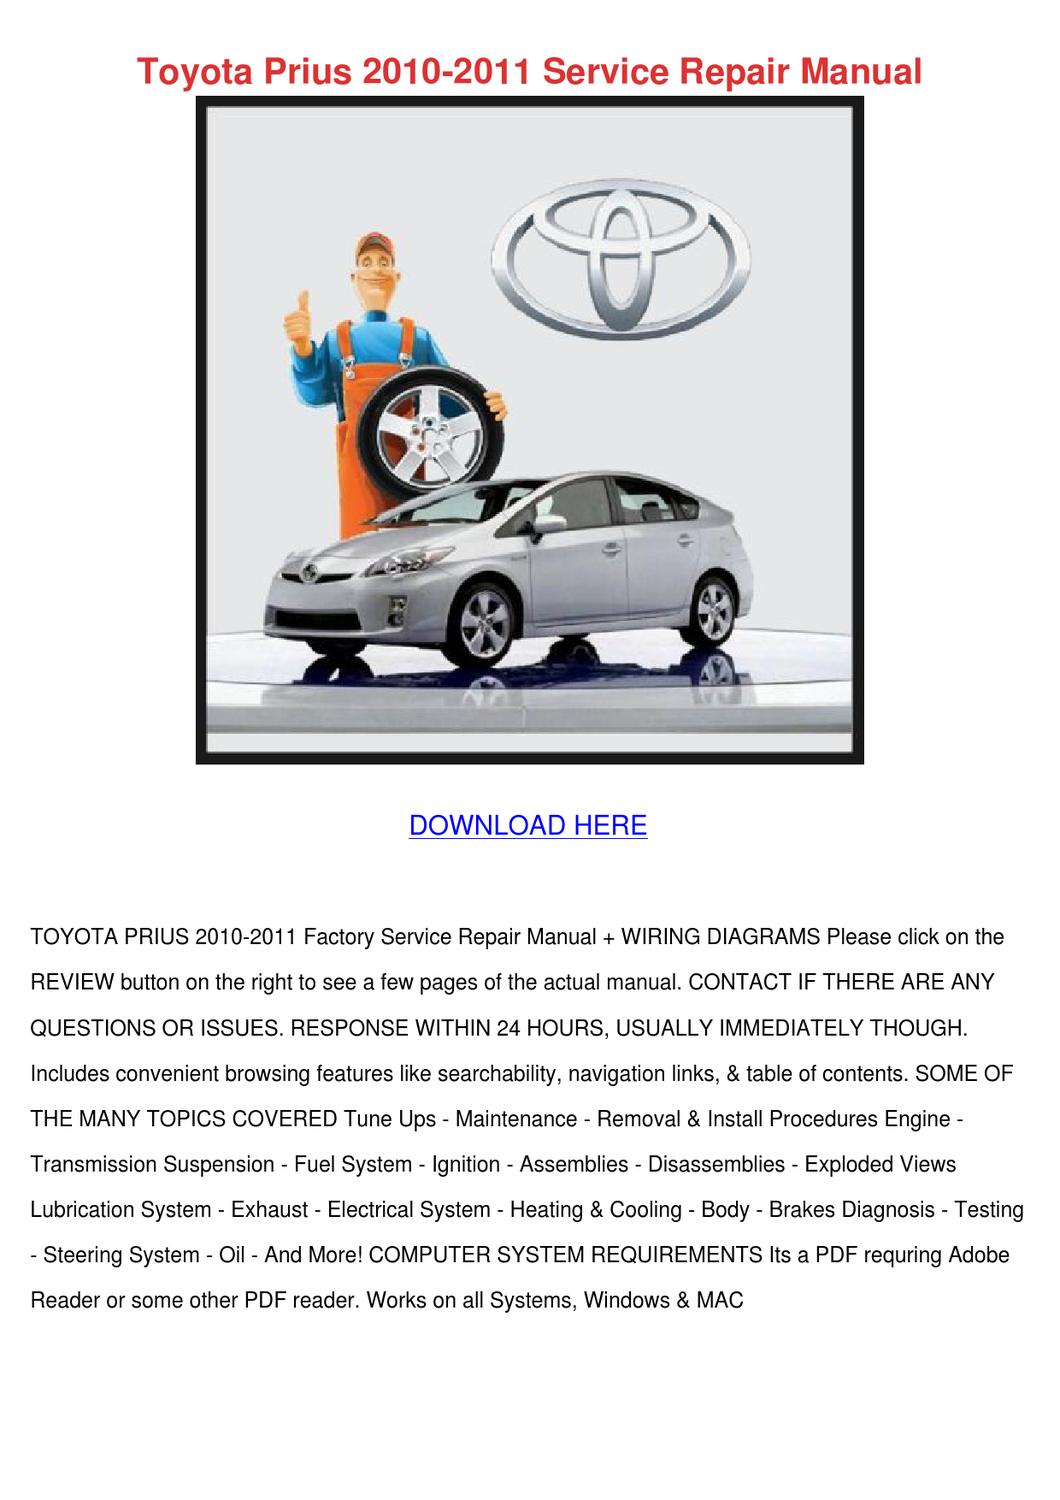 Toyota Prius 2011 User Manual Pdf